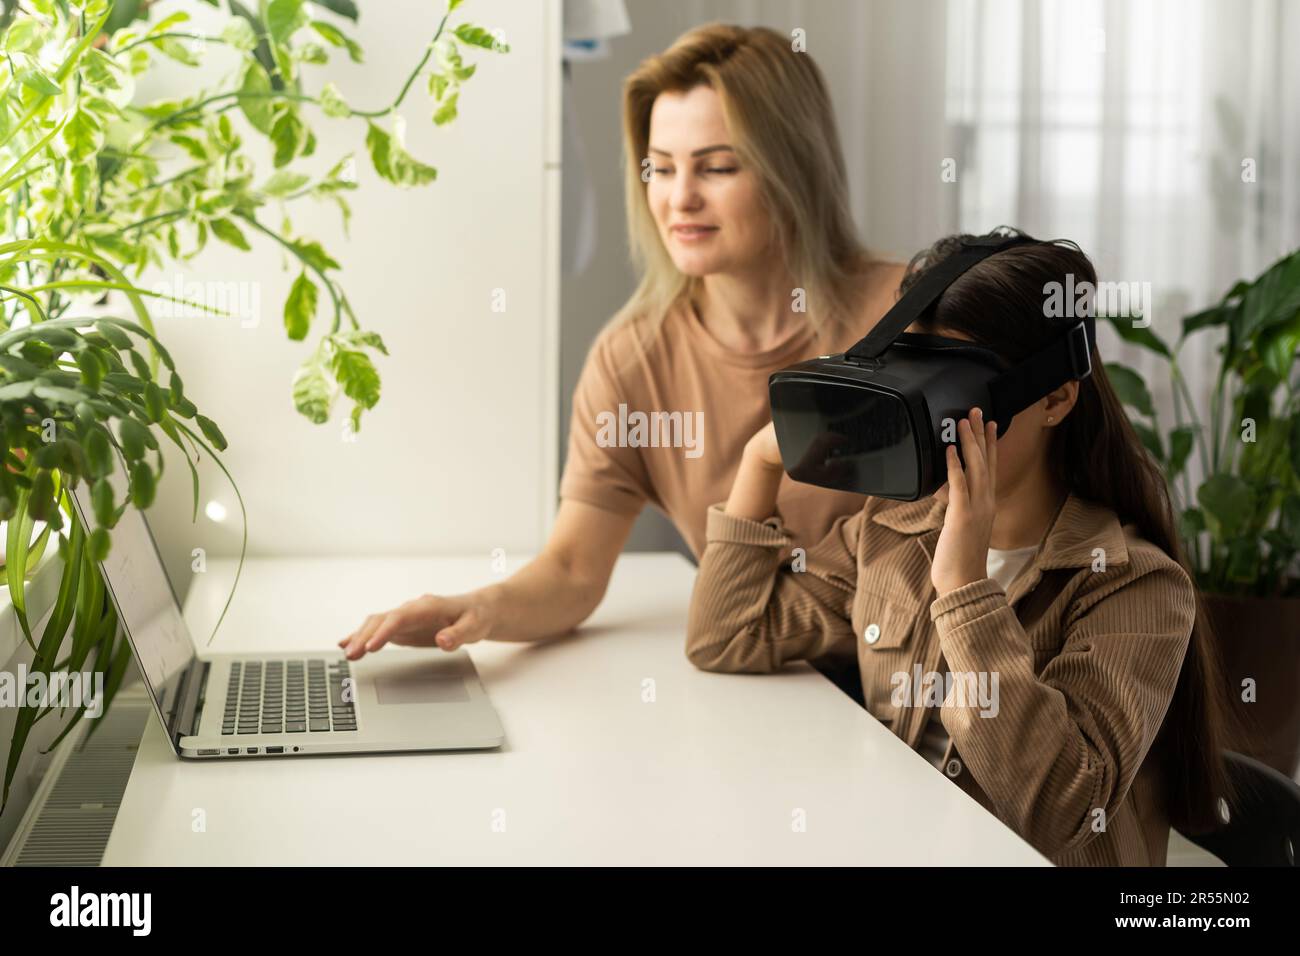 Familien und neue Technologien. Lächelnde Arbeit-zu-Hause-Mutter, die mit ihrer Tochter einen VR-Helm trägt und die virtuelle Realität erforscht. Neugieriges Teenager-Mädchen Stockfoto